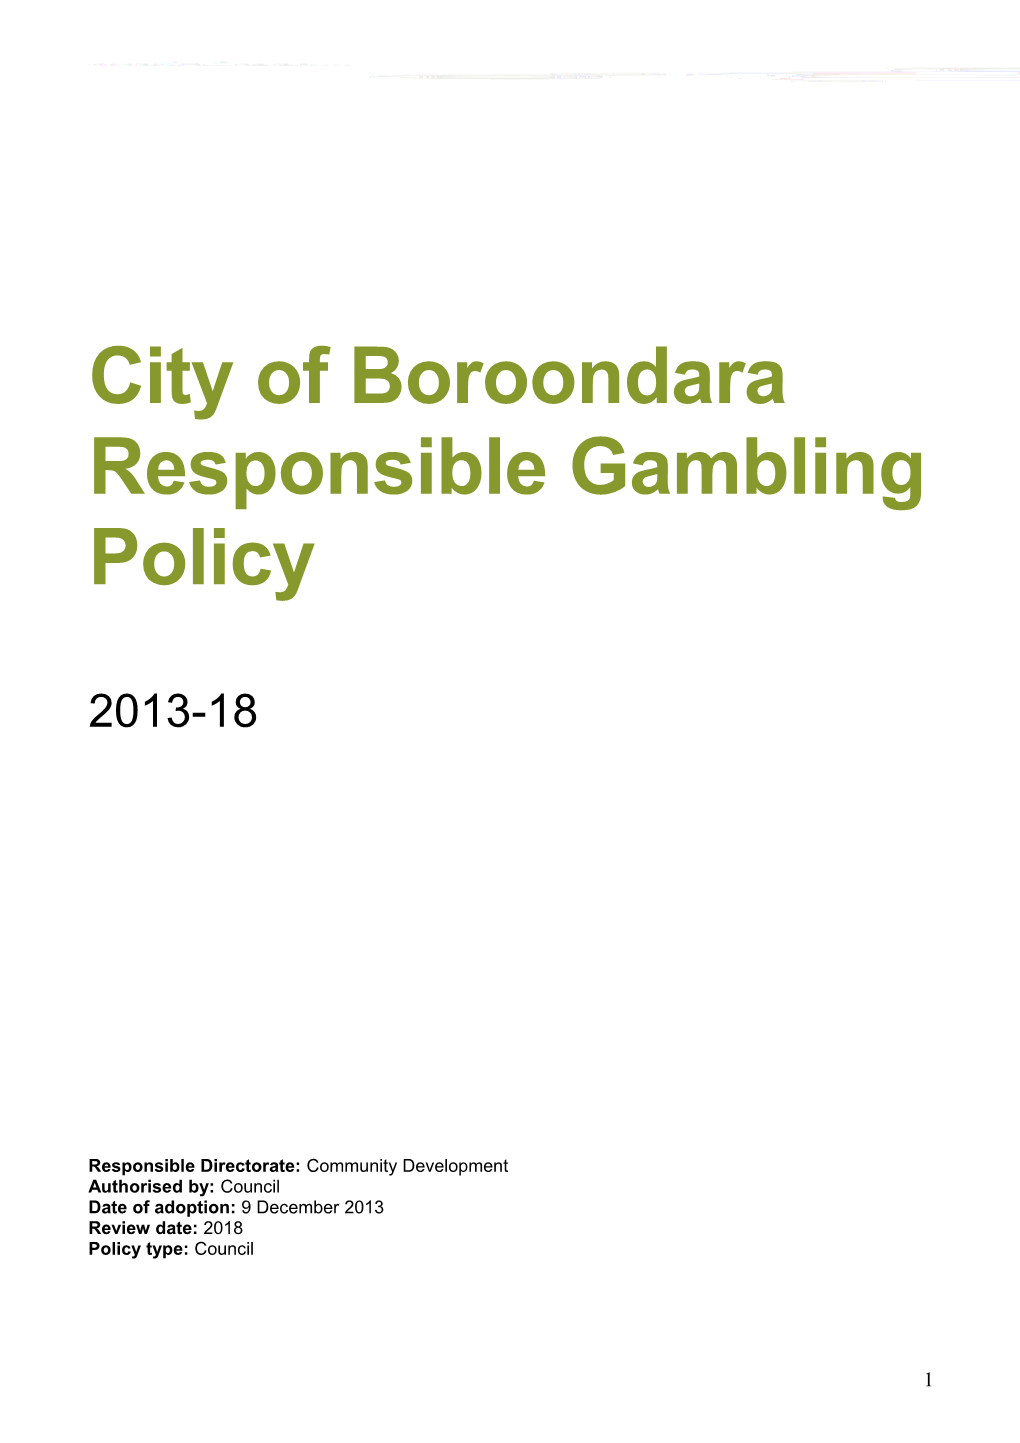 Responsible Gambling Policy 2013-2018